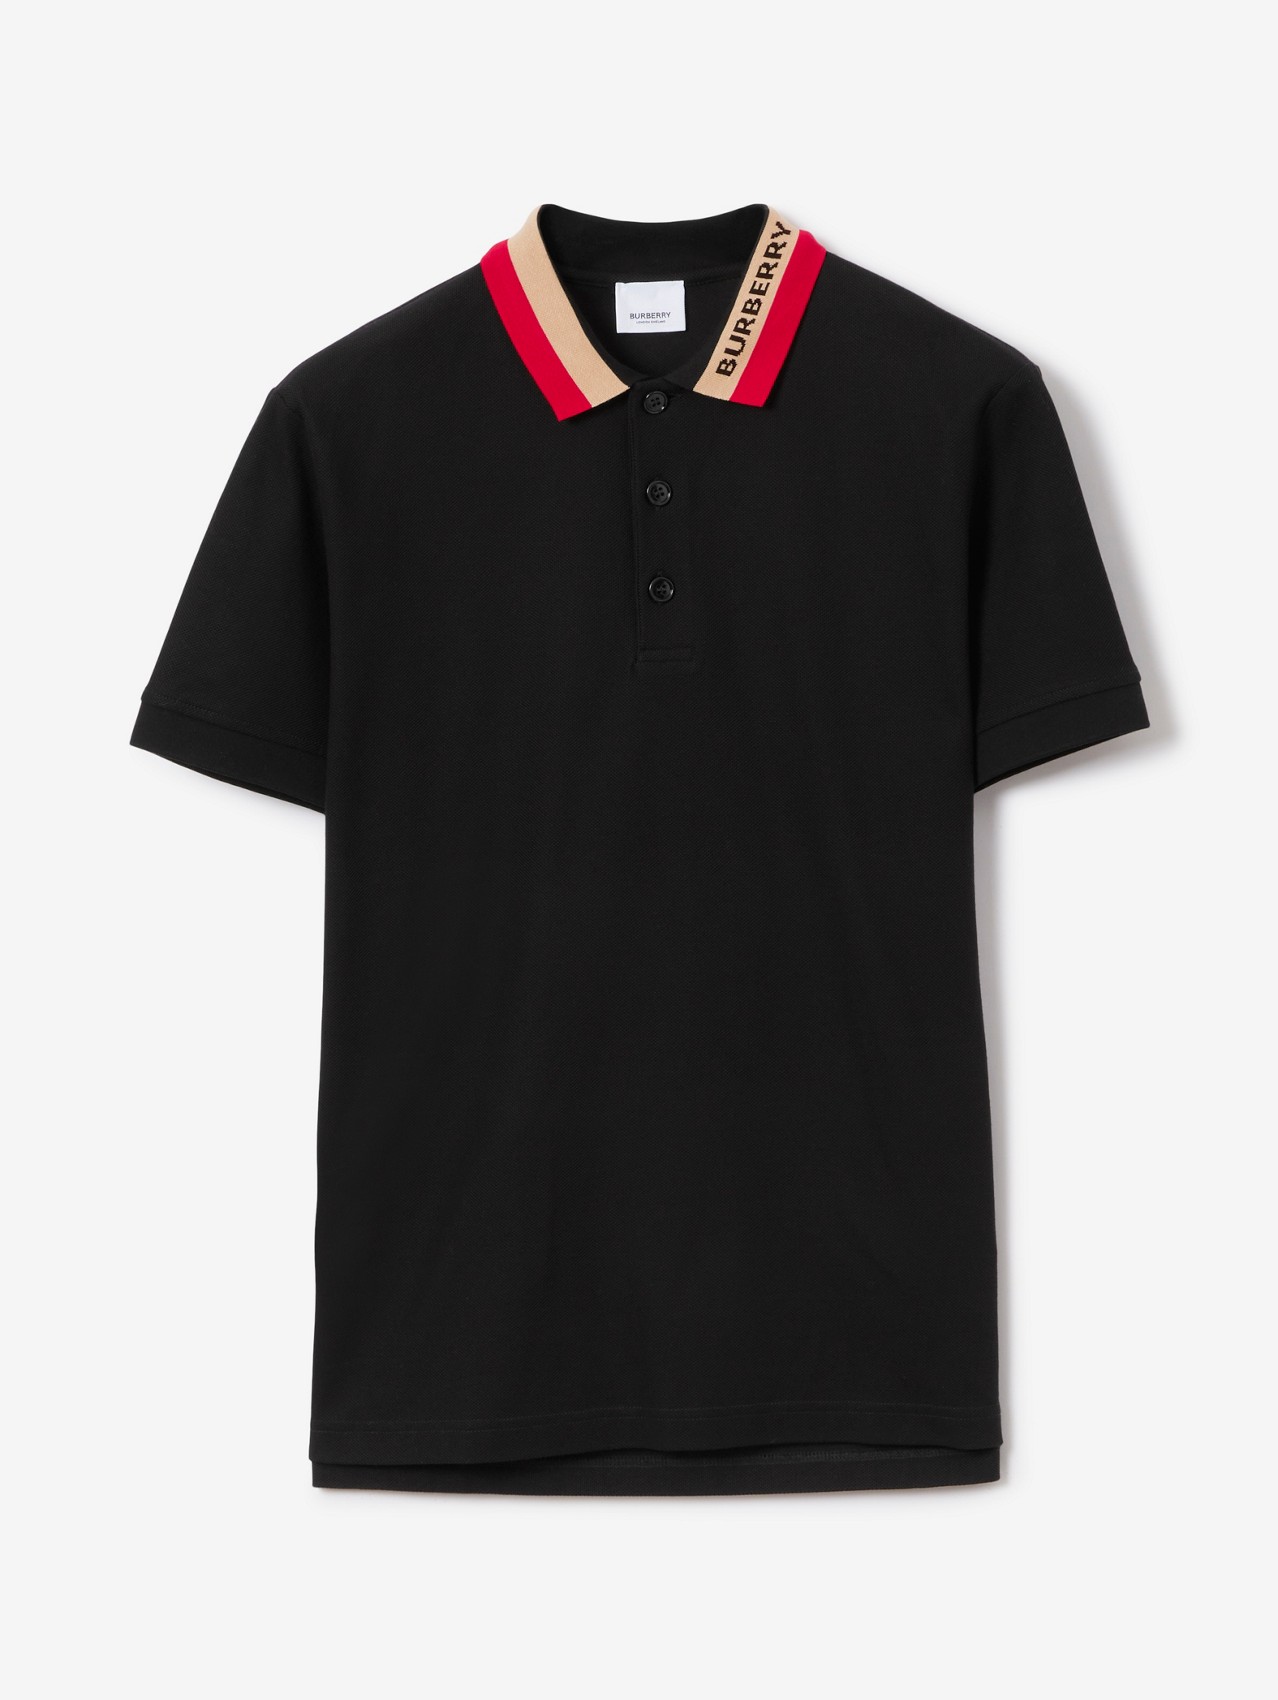 overzee regiment Versterken Men's Designer Polo Shirts & T-shirts | Burberry® Official